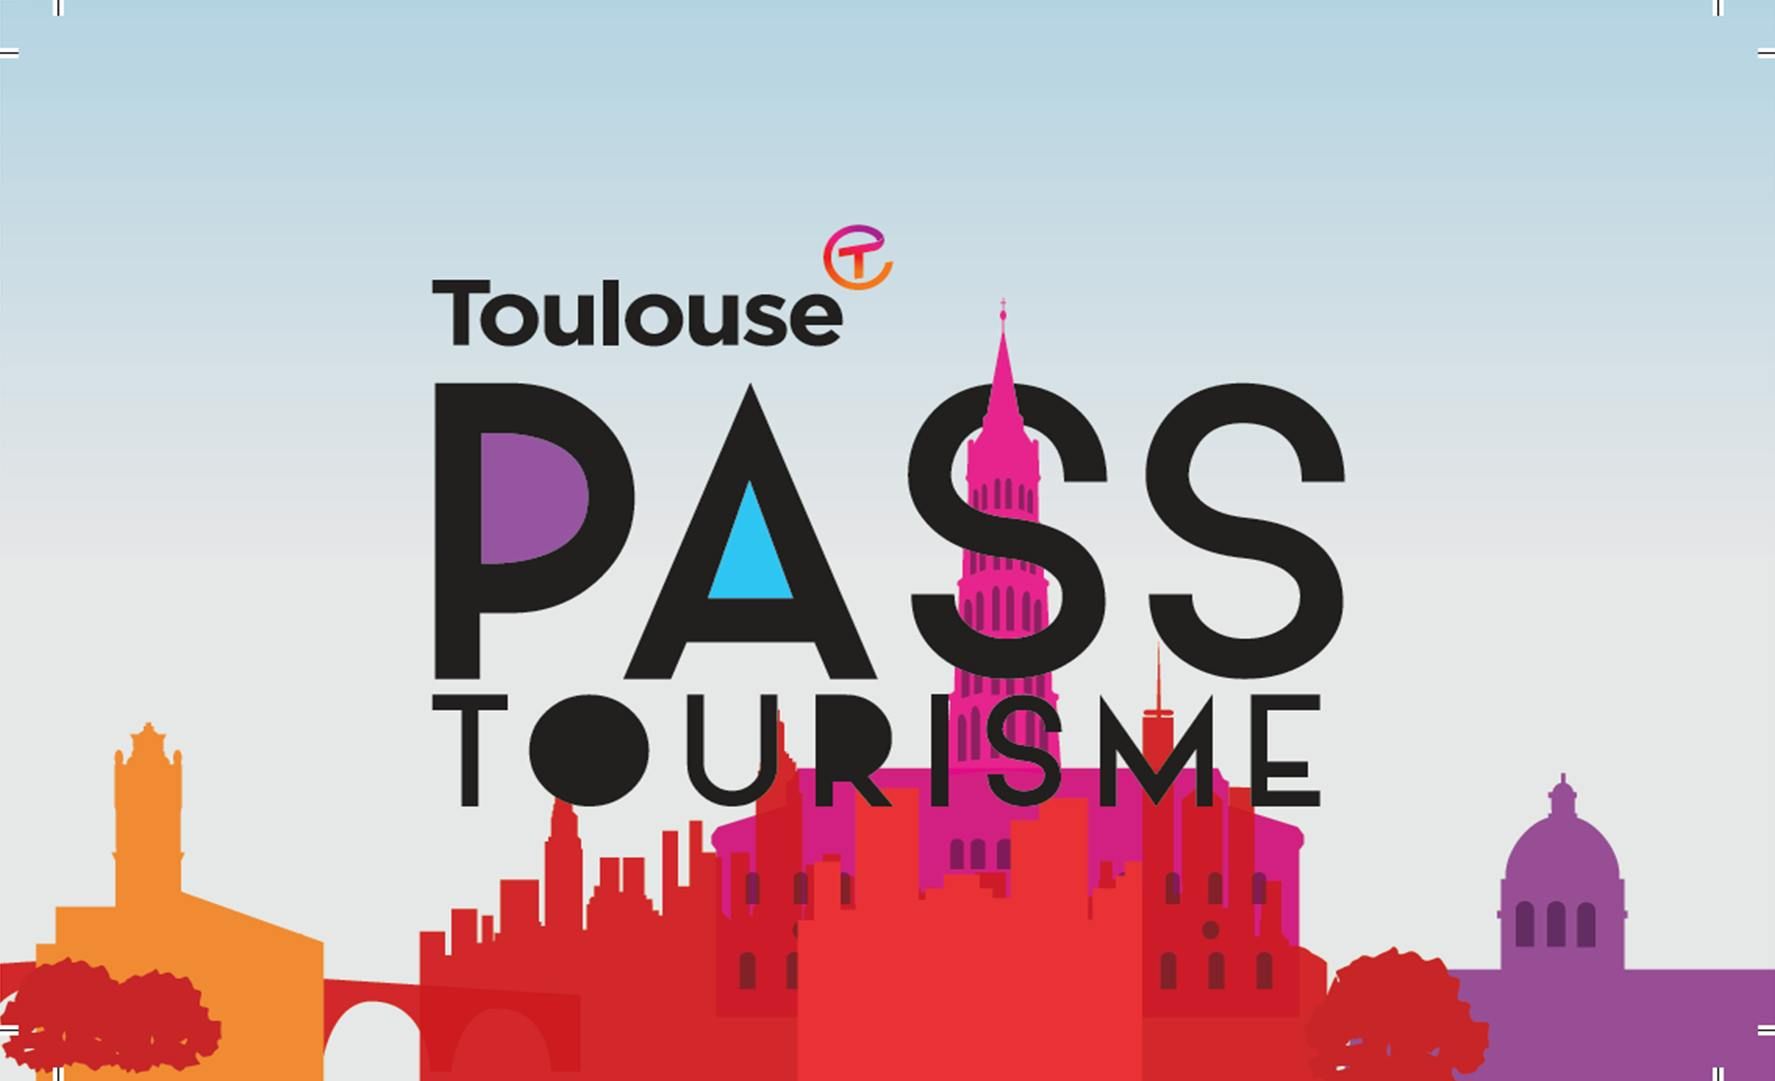 Imagen del tour: Tarjeta de la ciudad de Toulouse